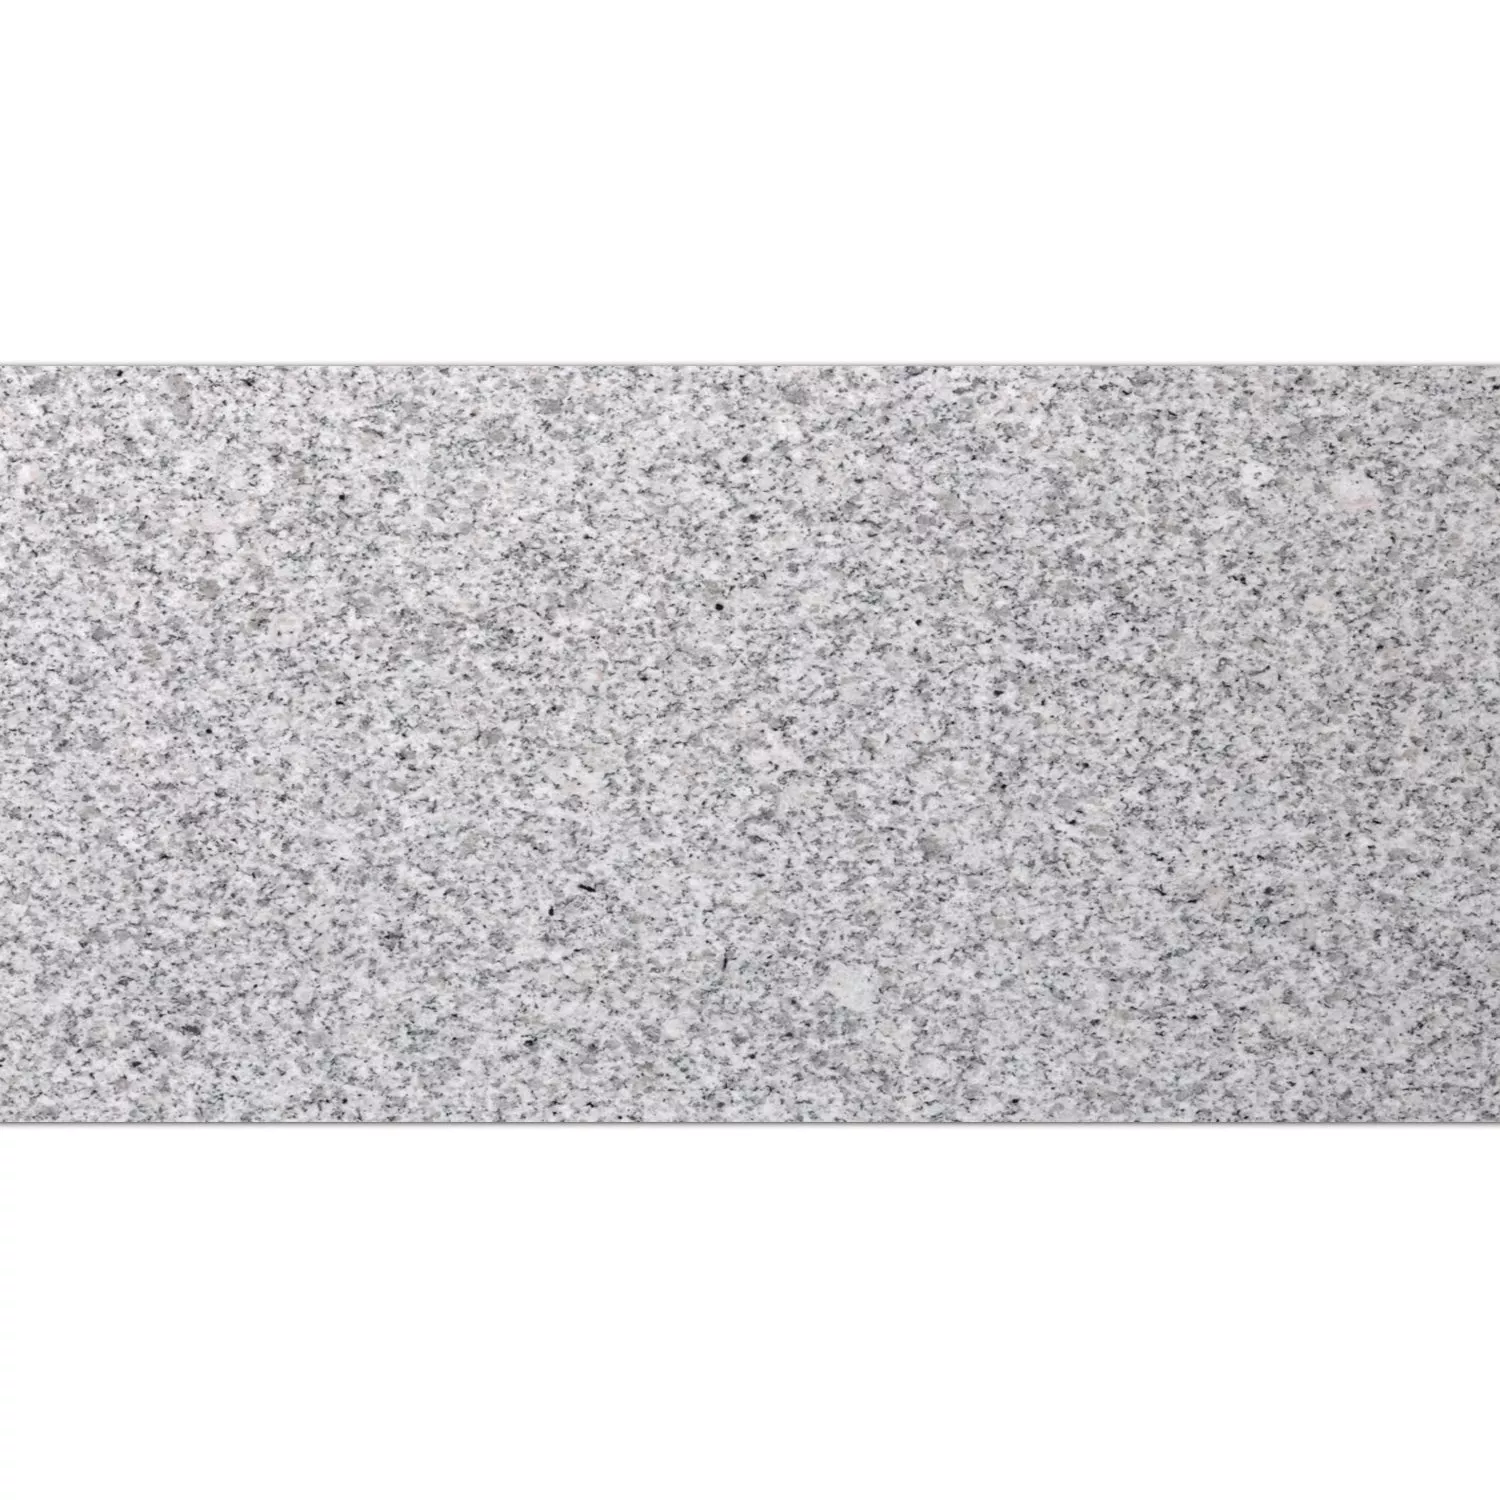 Carreaux Pierre Naturelle Granit China Grey 30,5x61cm